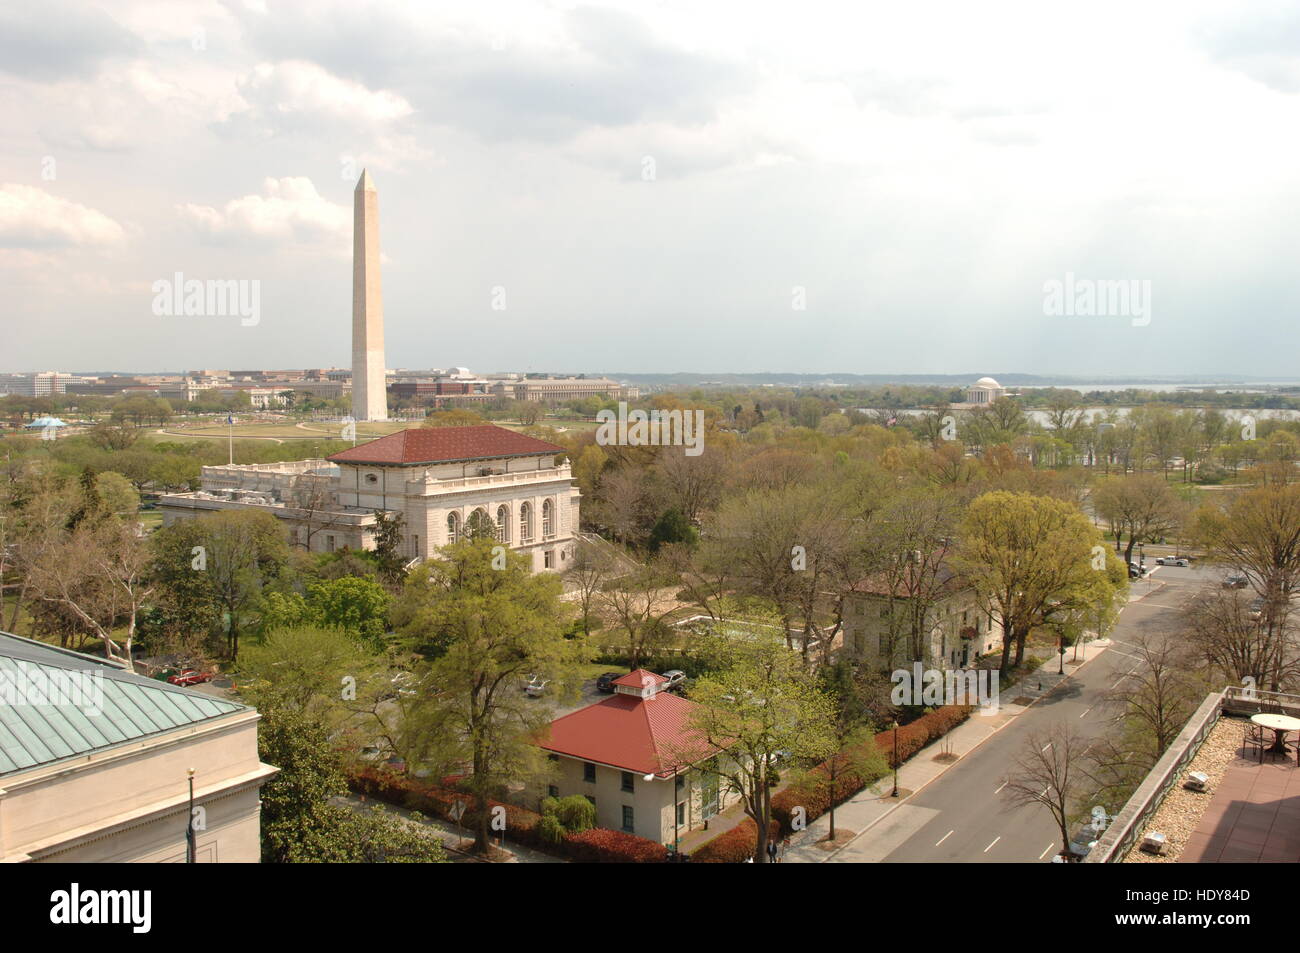 Washington D.C. vista del Monumento a Washington desde la azotea de un edificio distante. Foto tomada en 2006. Foto de stock